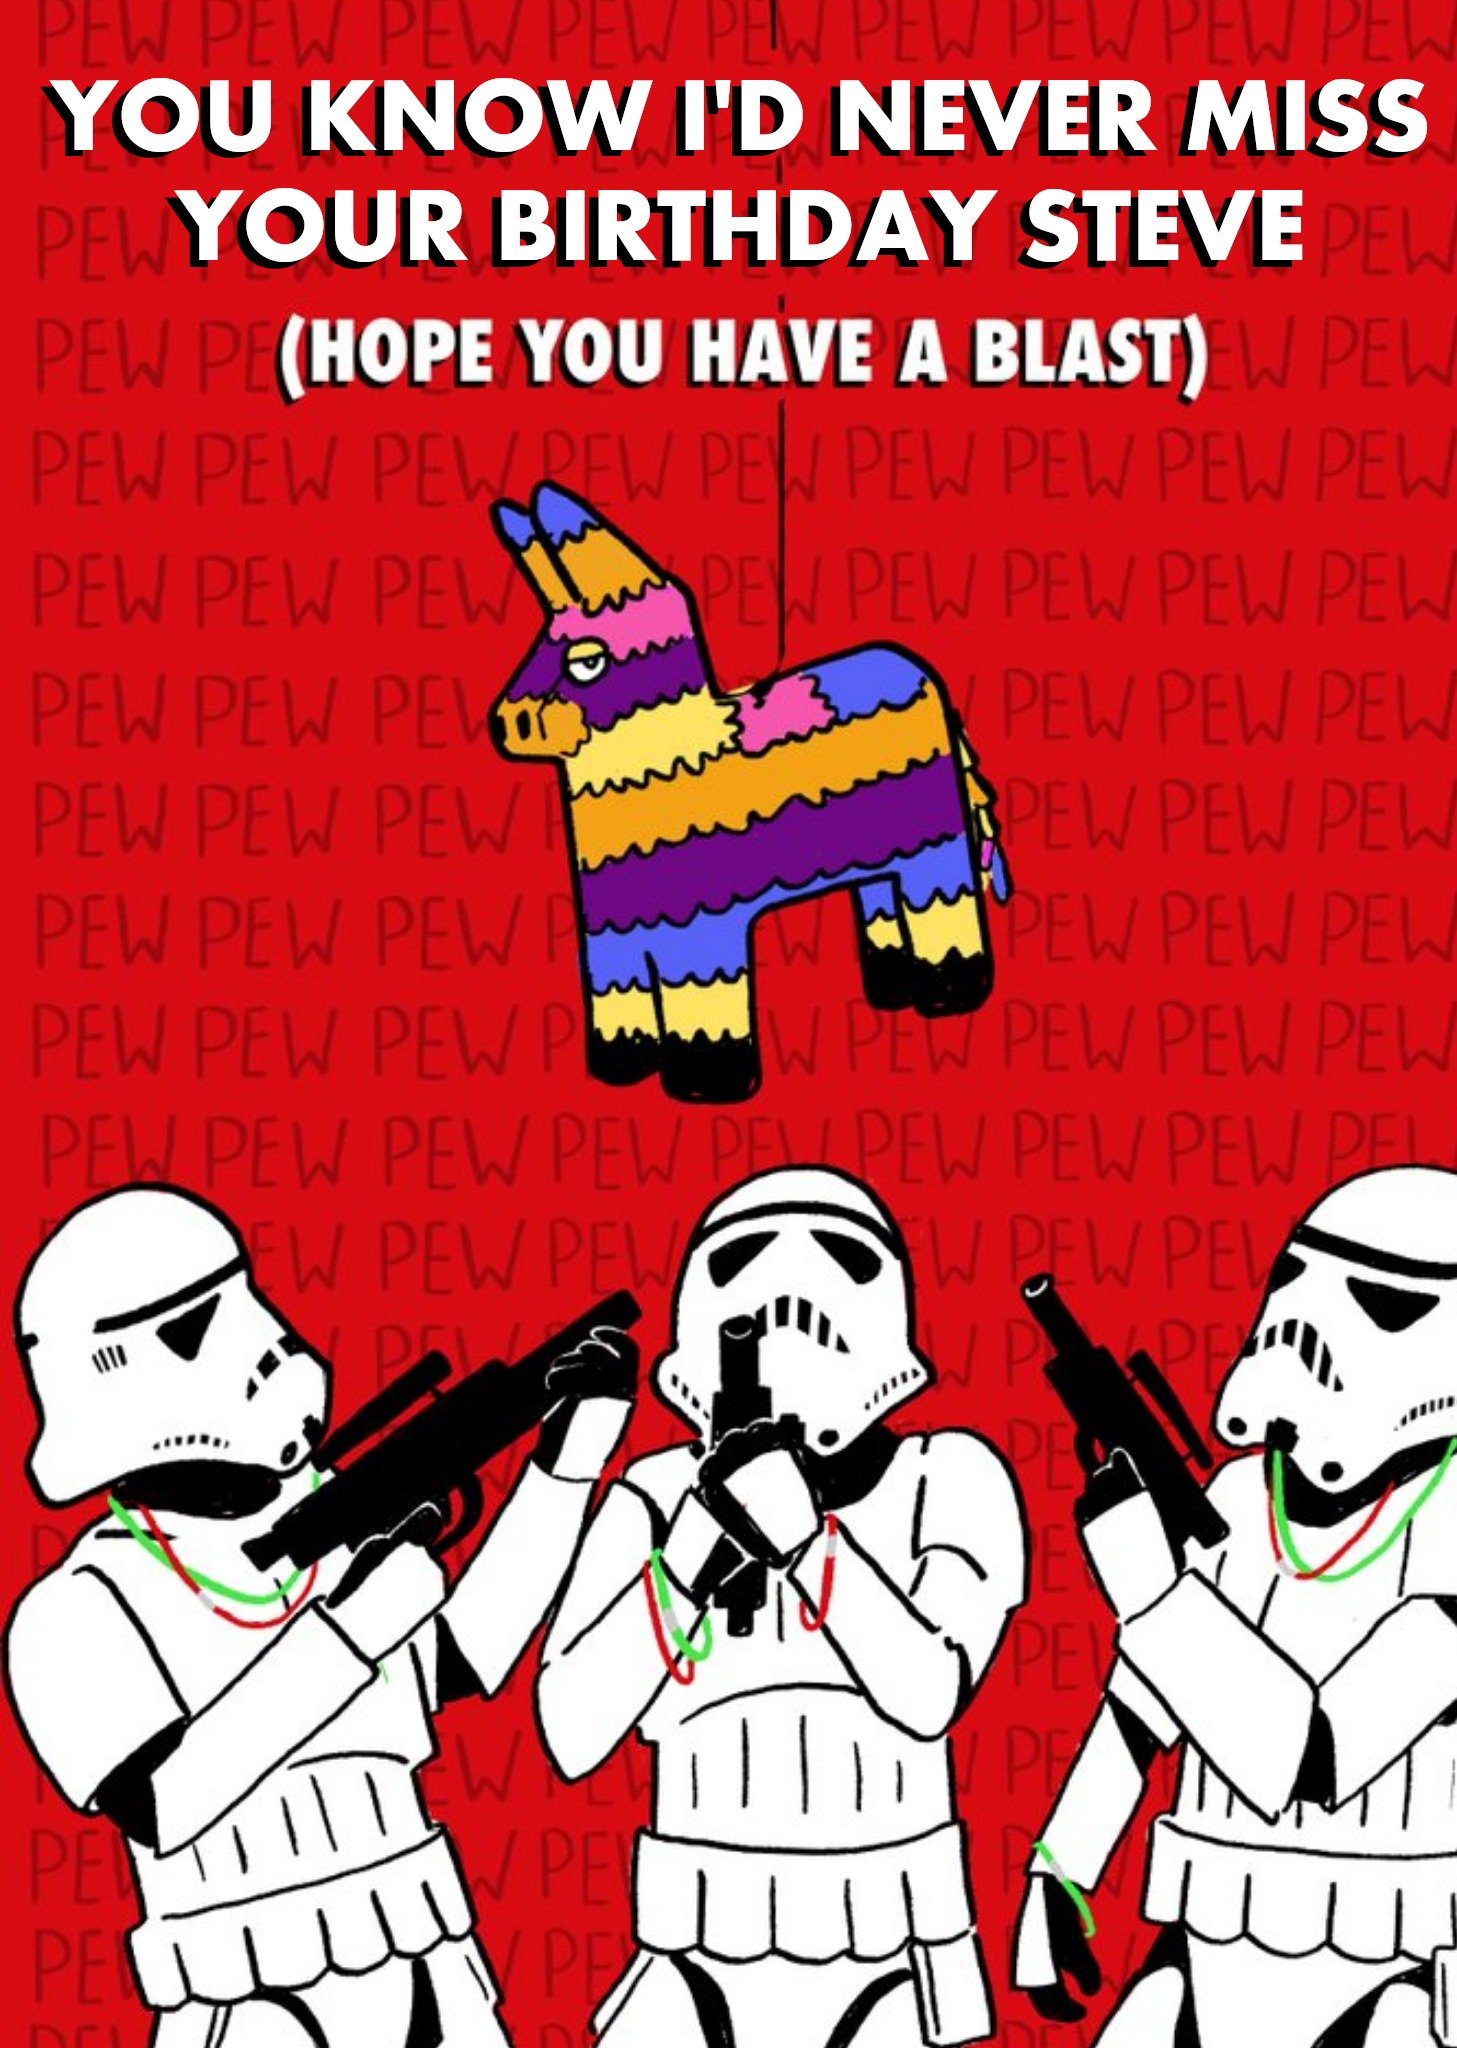 Disney Funny Star Wars Birthday Card - Hope You Have A Blast Ecard